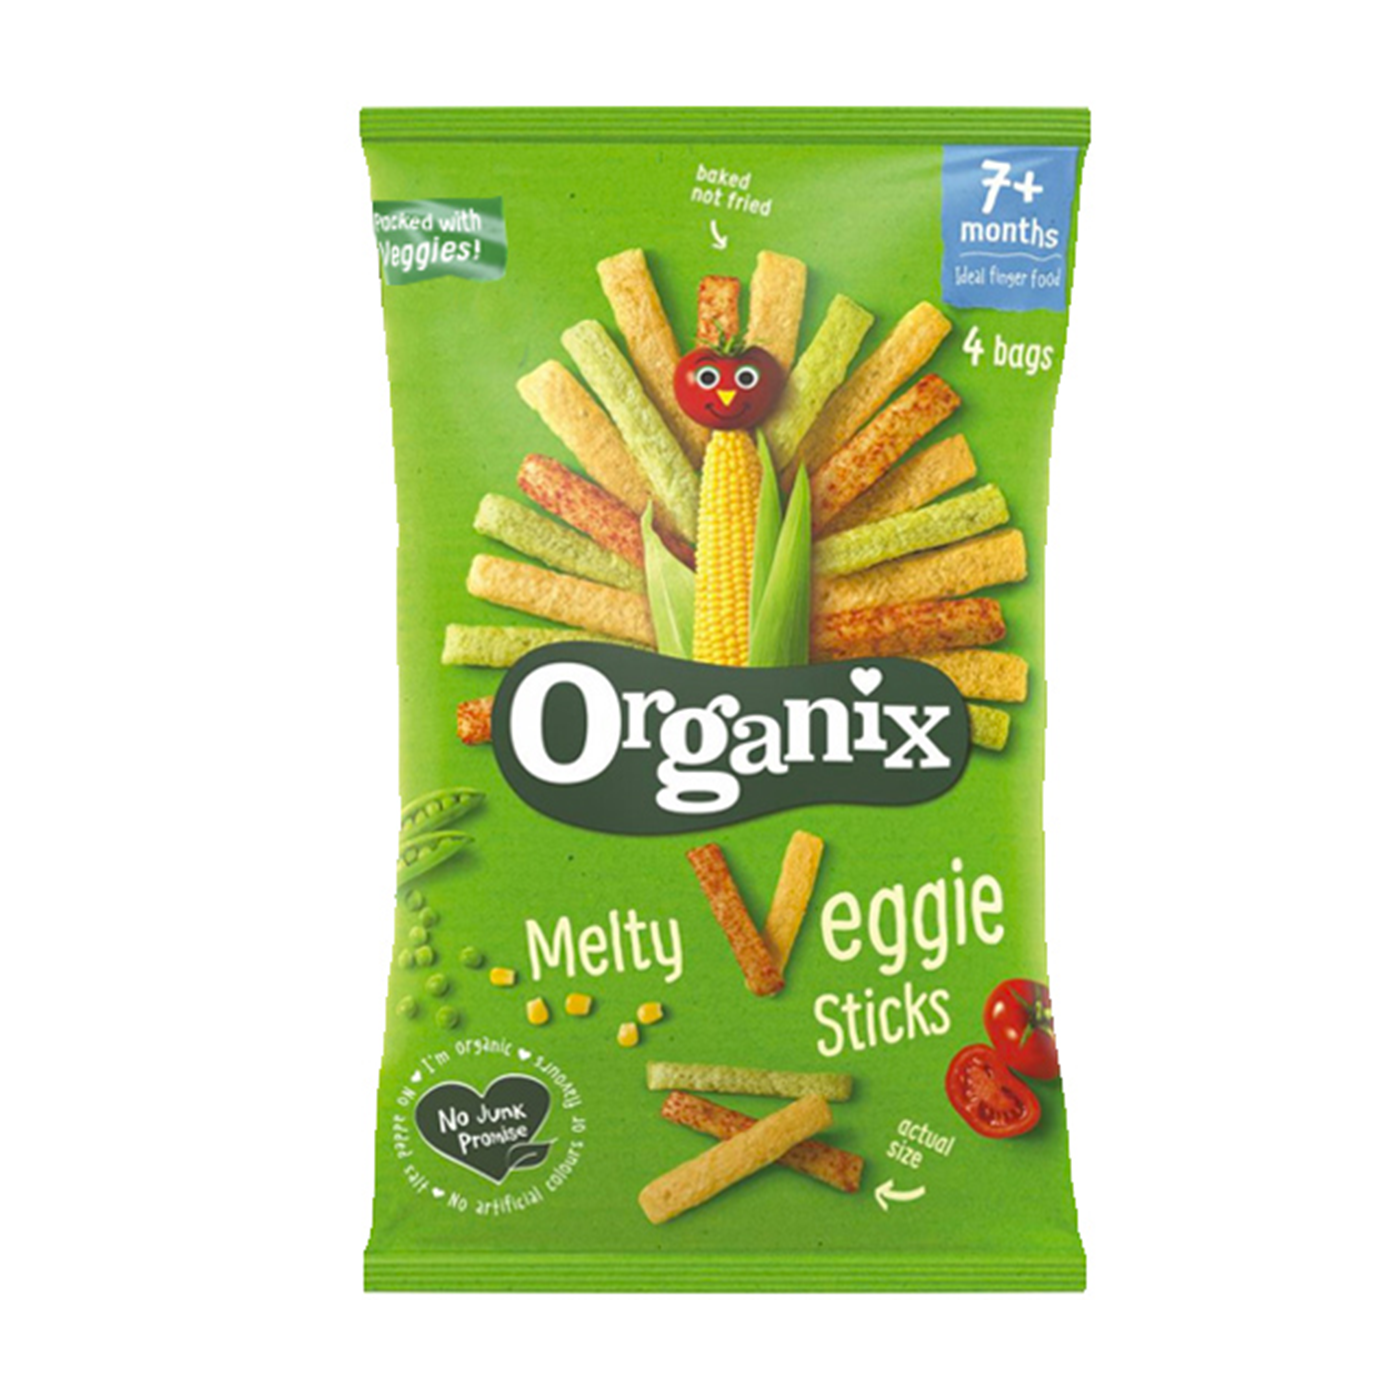 Βιολογικό σνακ λαχανικών με αρακά, ντομάτα και γλυκό καλαμπόκι "Organix" 20g